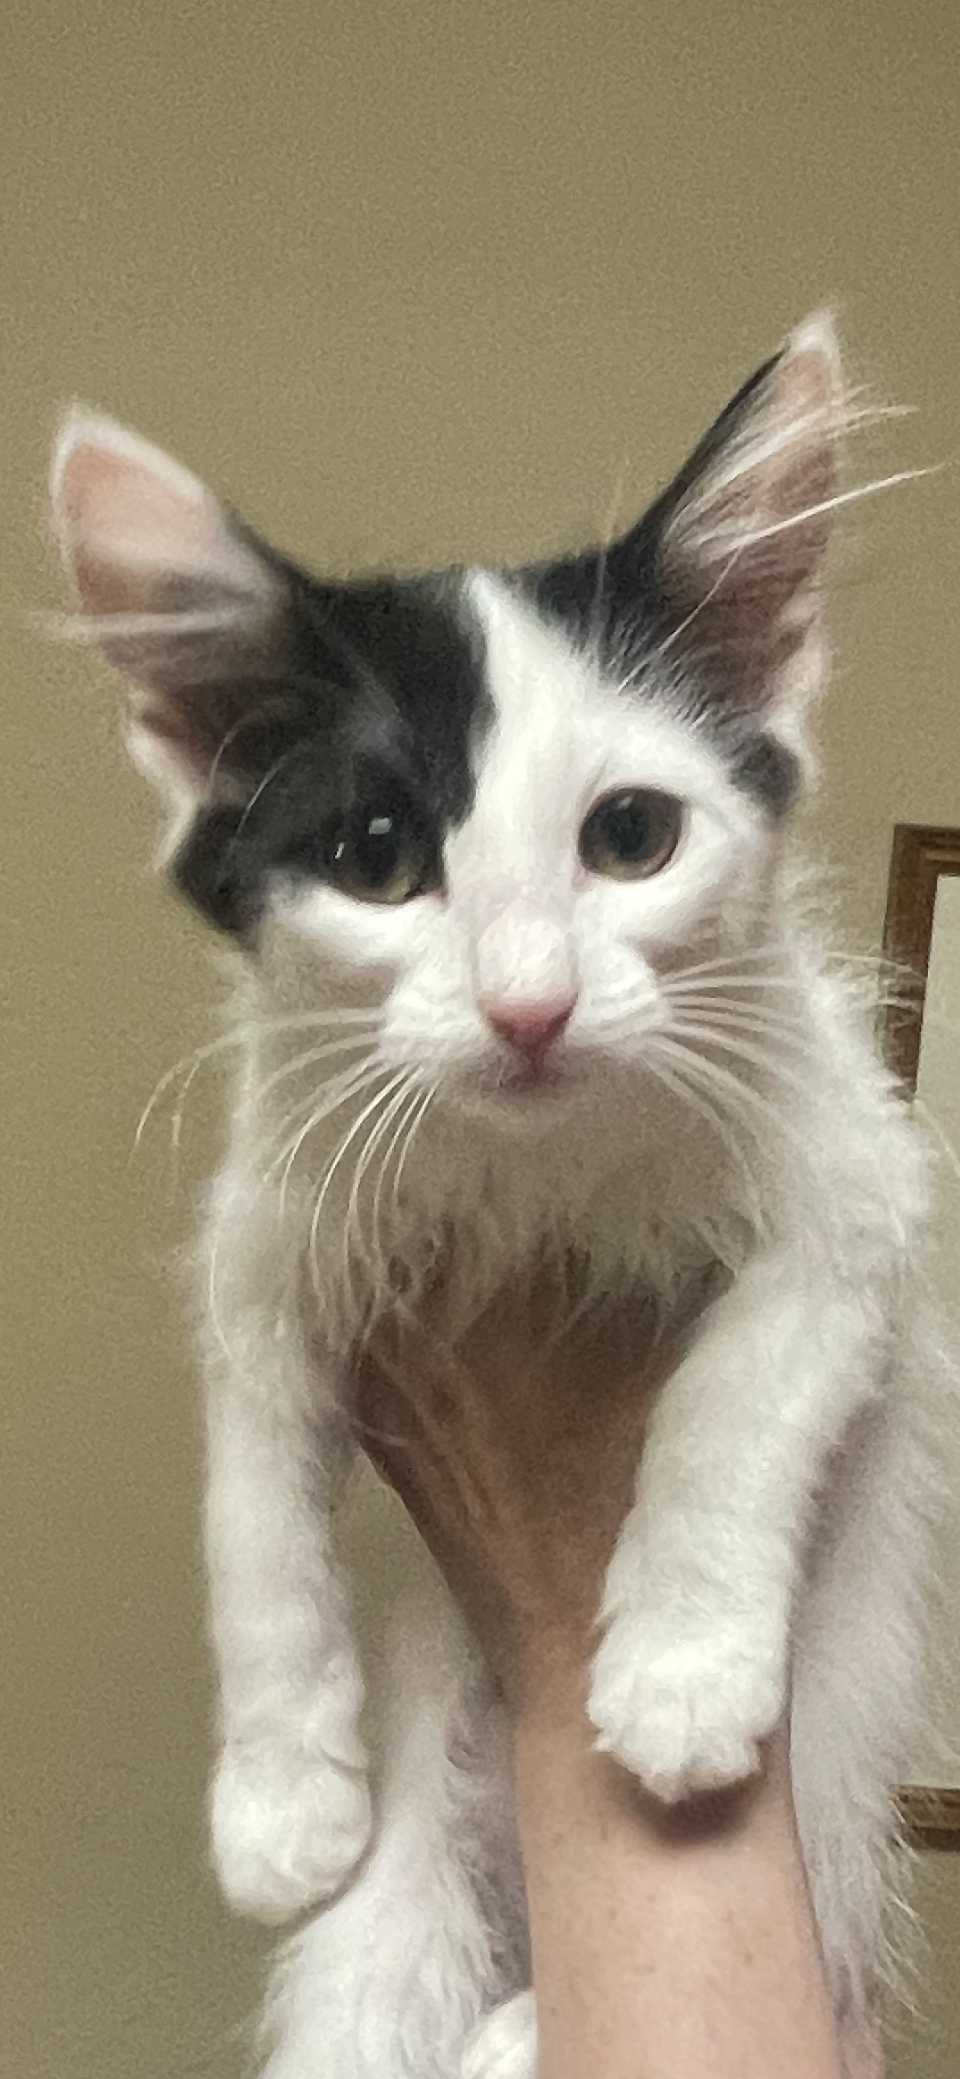 adoptable Cat in Scottsdale, AZ named Momenturm